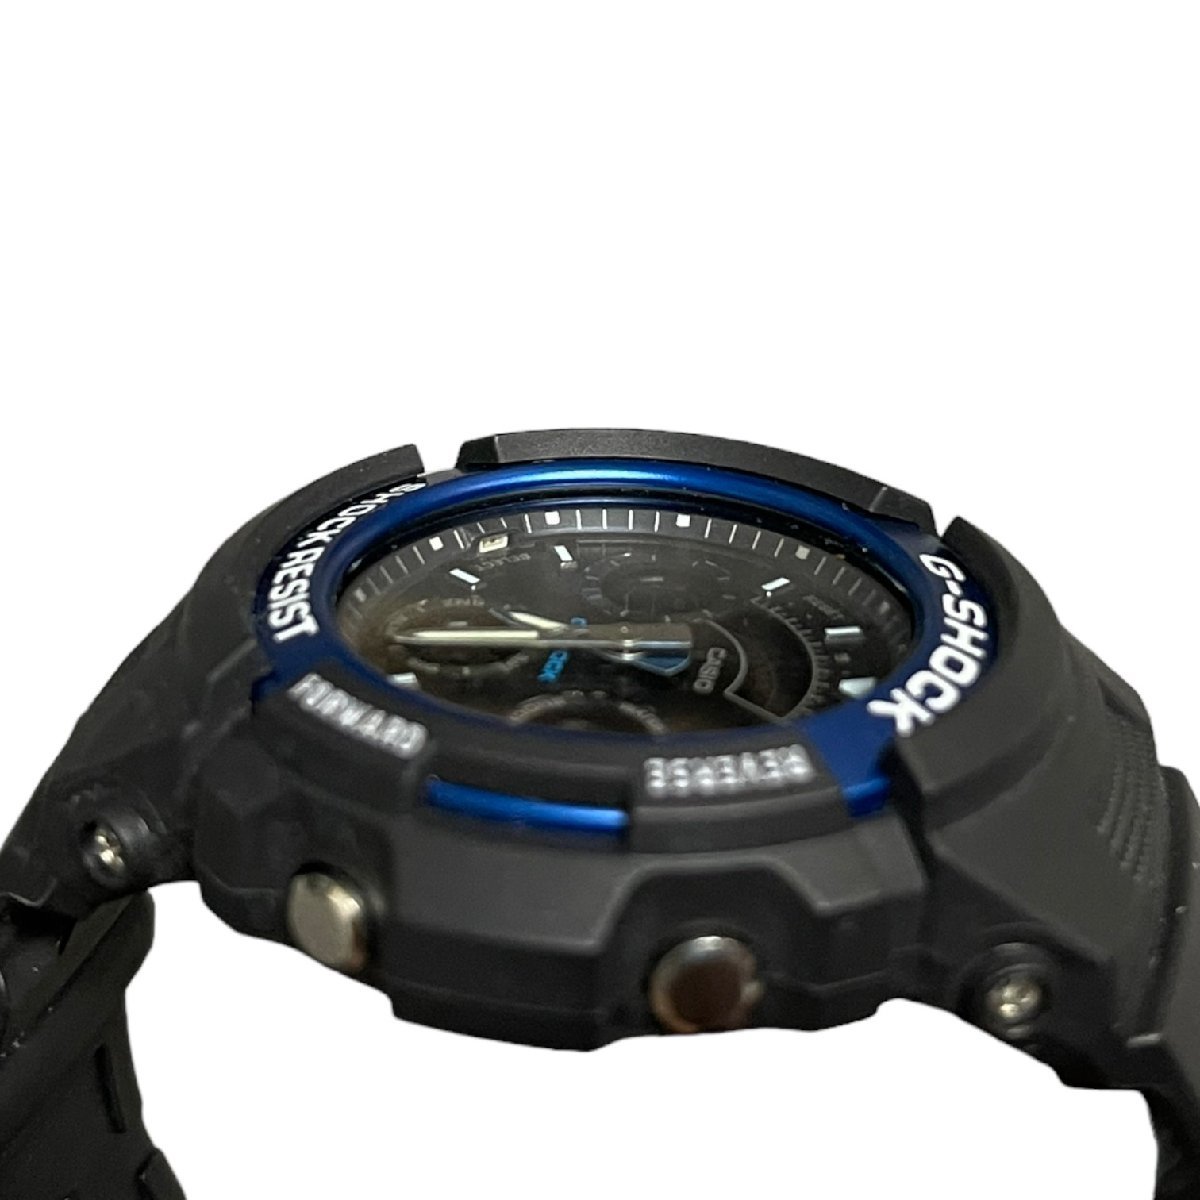 【中古品】CASIO G-SHOCK カシオ AW-591 ブラックxブルー アナデジ クオーツ メンズ腕時計 箱なし 本体のみ L55517RD_画像7